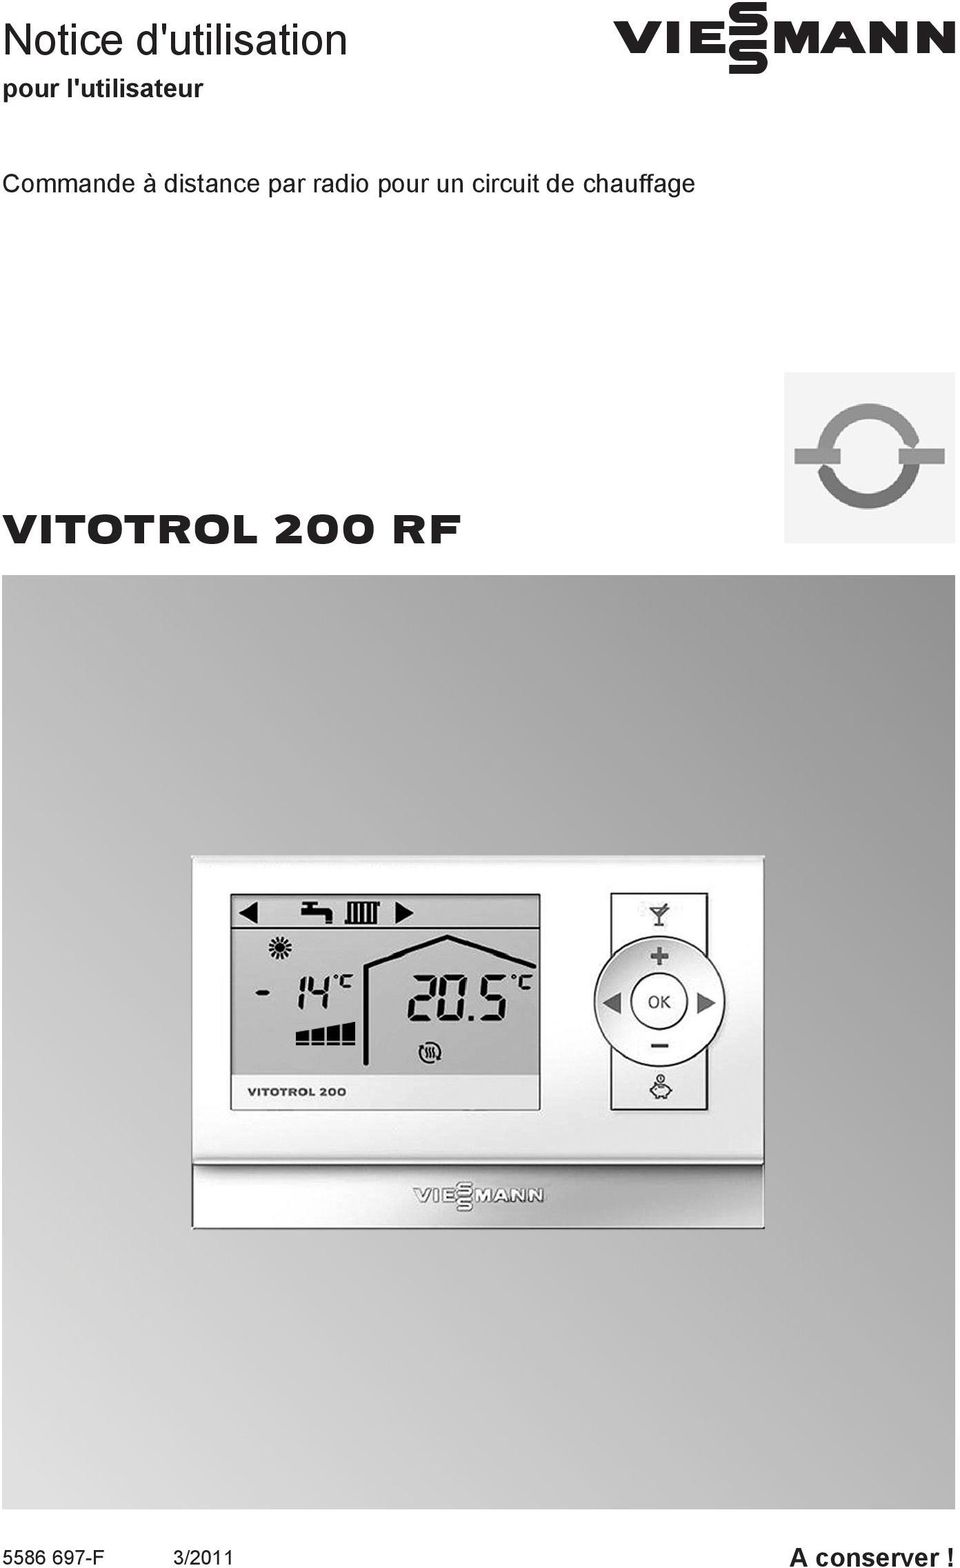 VIESMANN. Notice d'utilisation VITOTROL 200 RF. pour l'utilisateur.  Commande à distance par radio pour un circuit de chauffage - PDF Free  Download